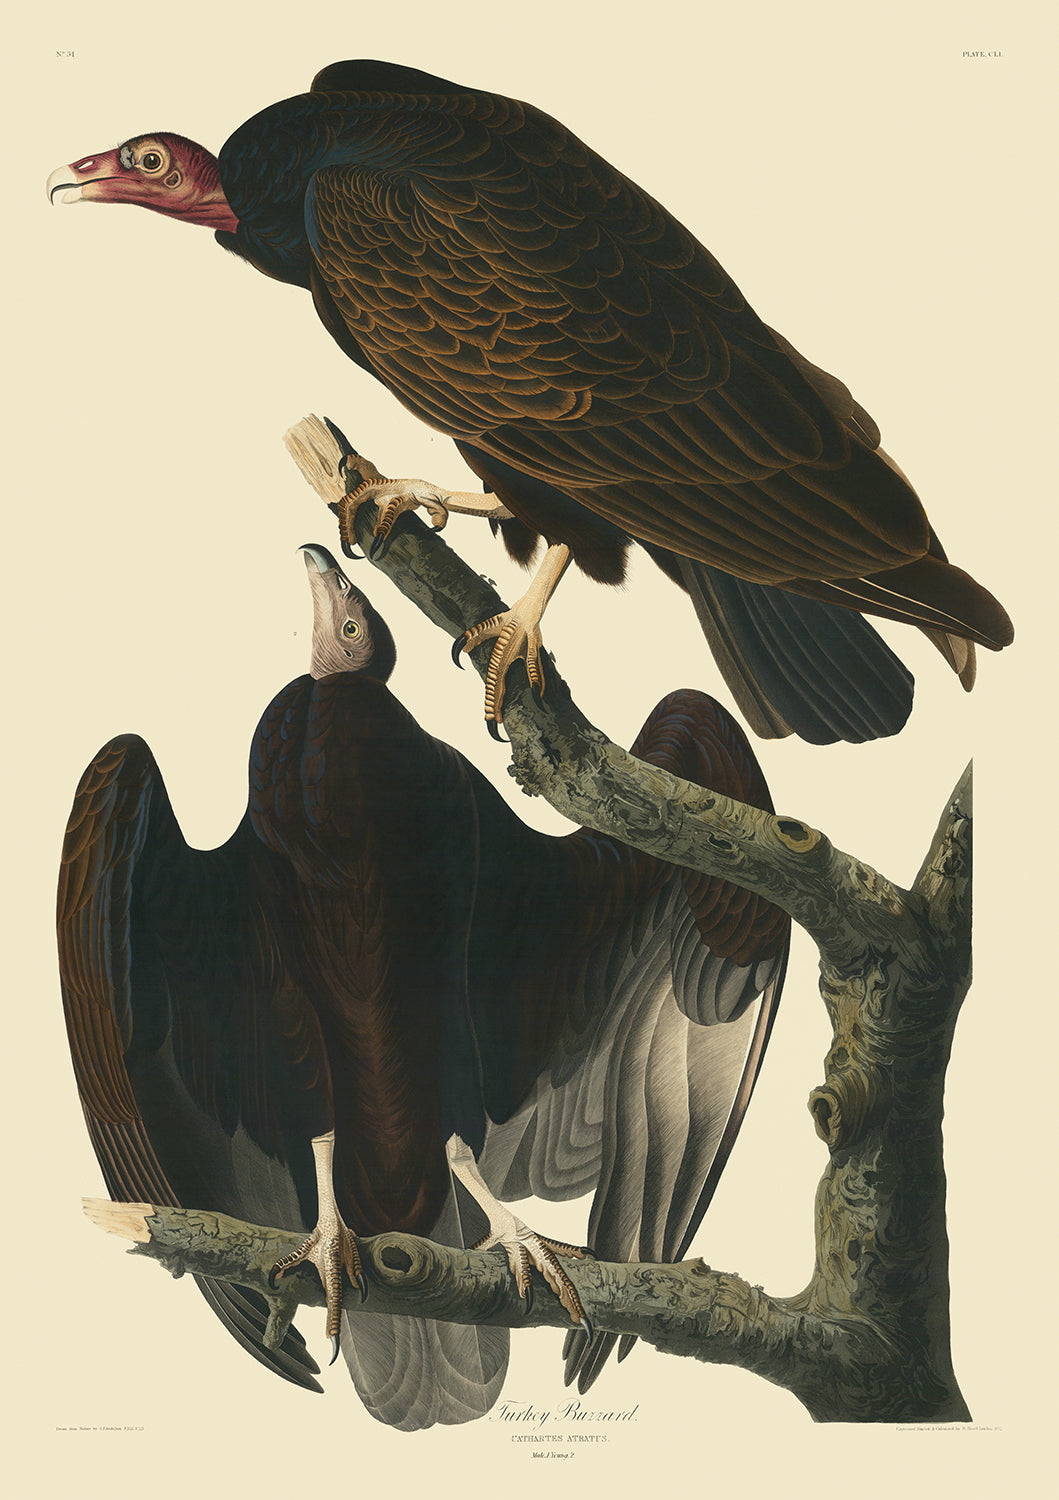 Buse à dinde tirée de « Birds of America » de John James Audubon, 1827